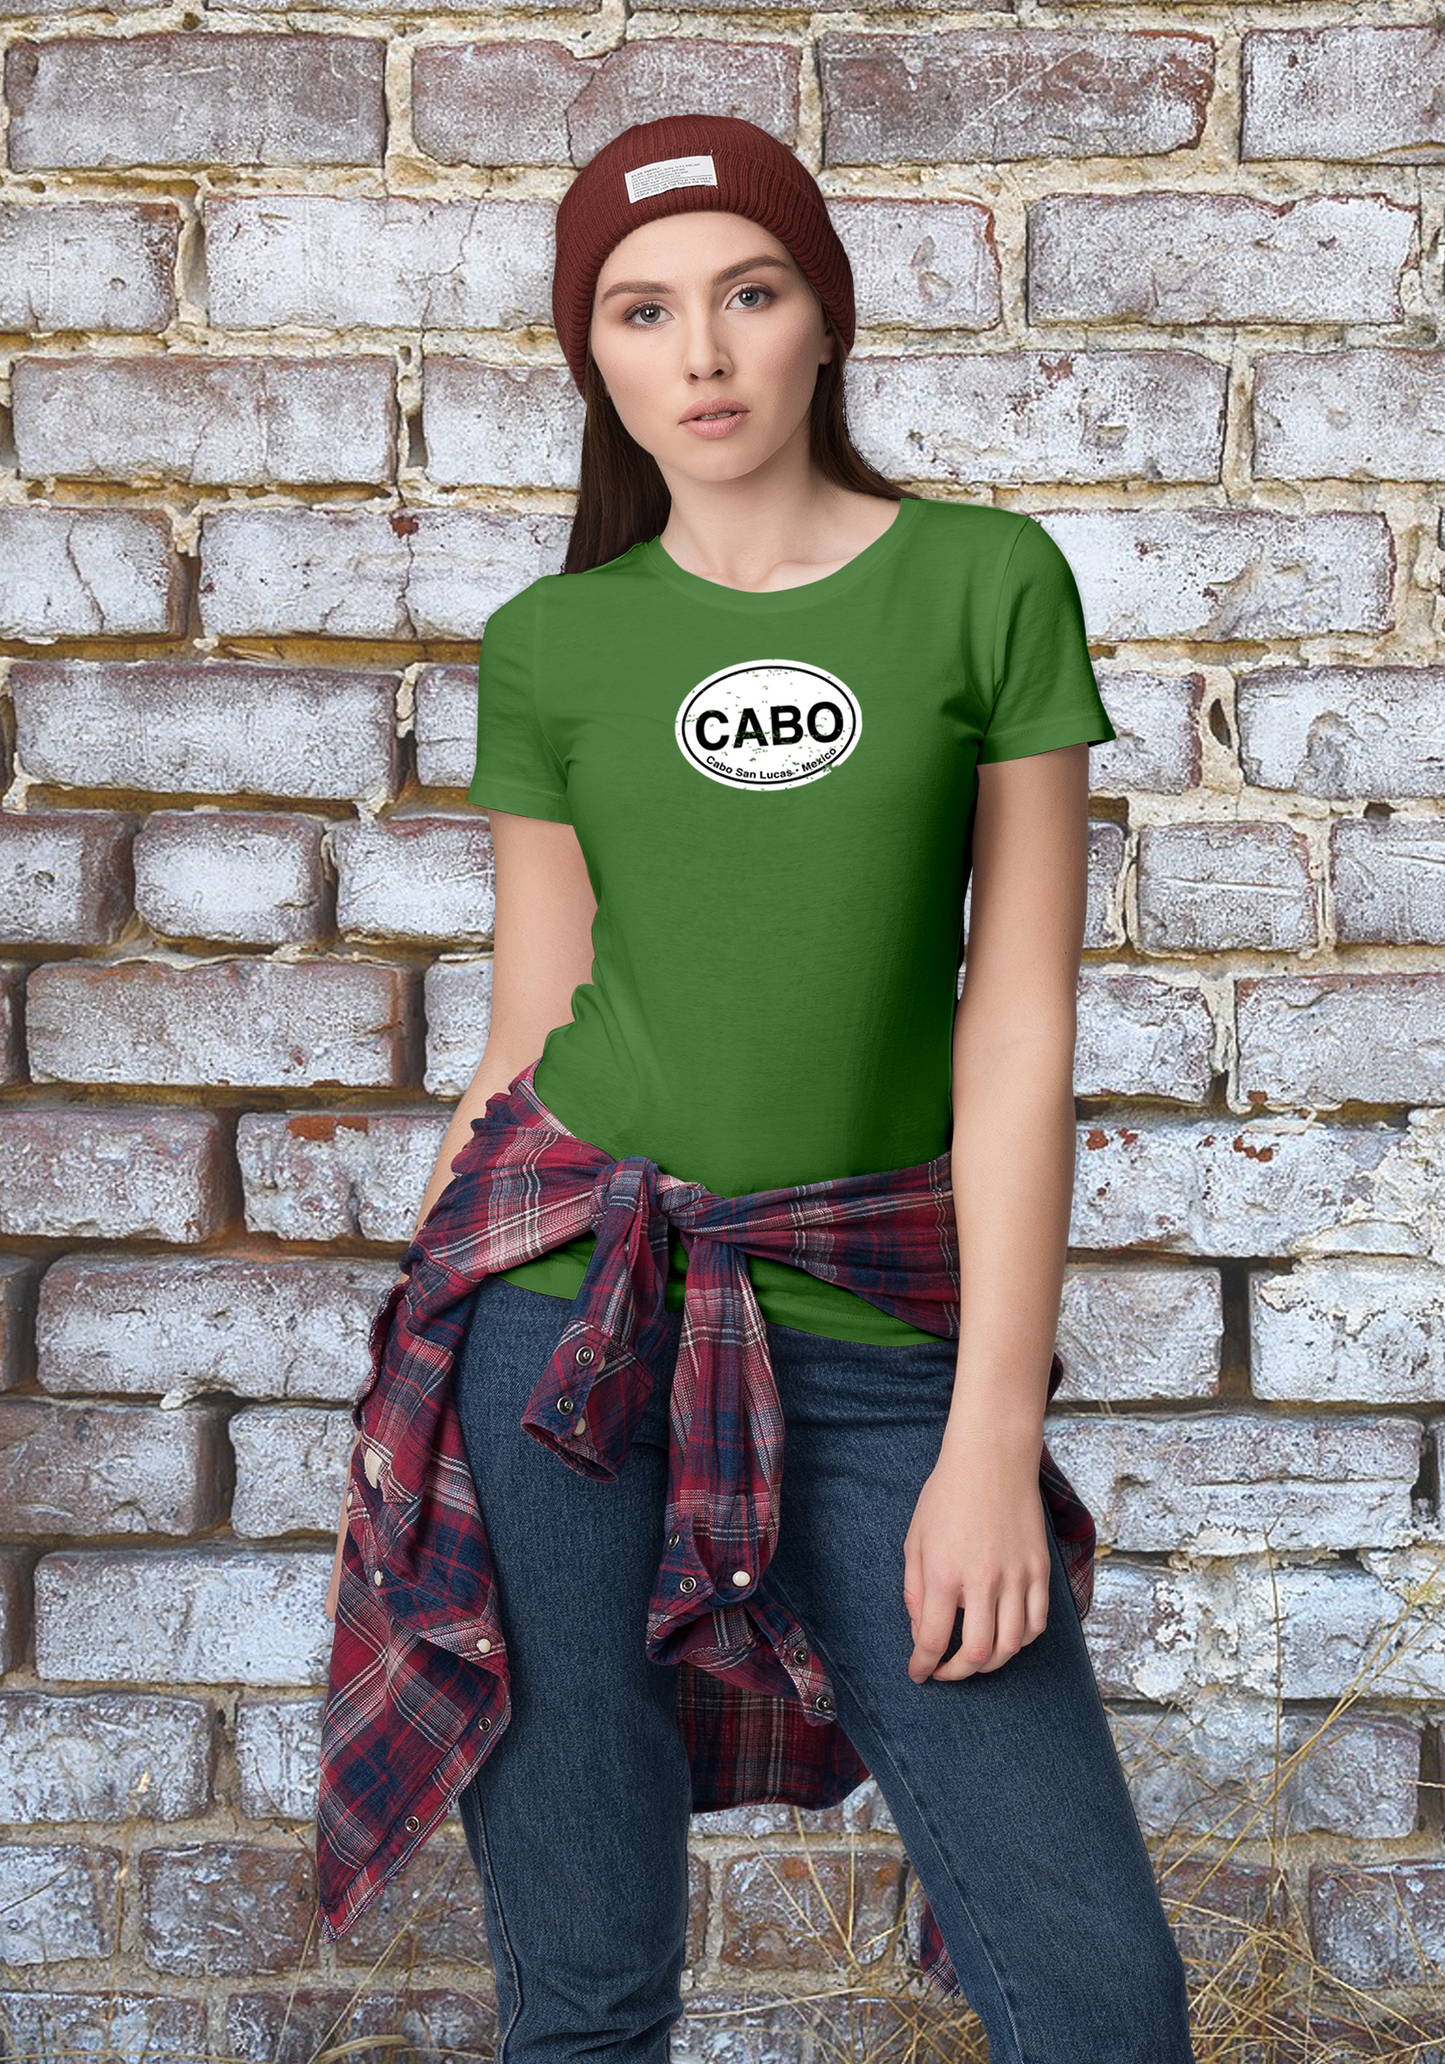 Cabo Women's Classic T-Shirt Souvenirs - My Destination Location